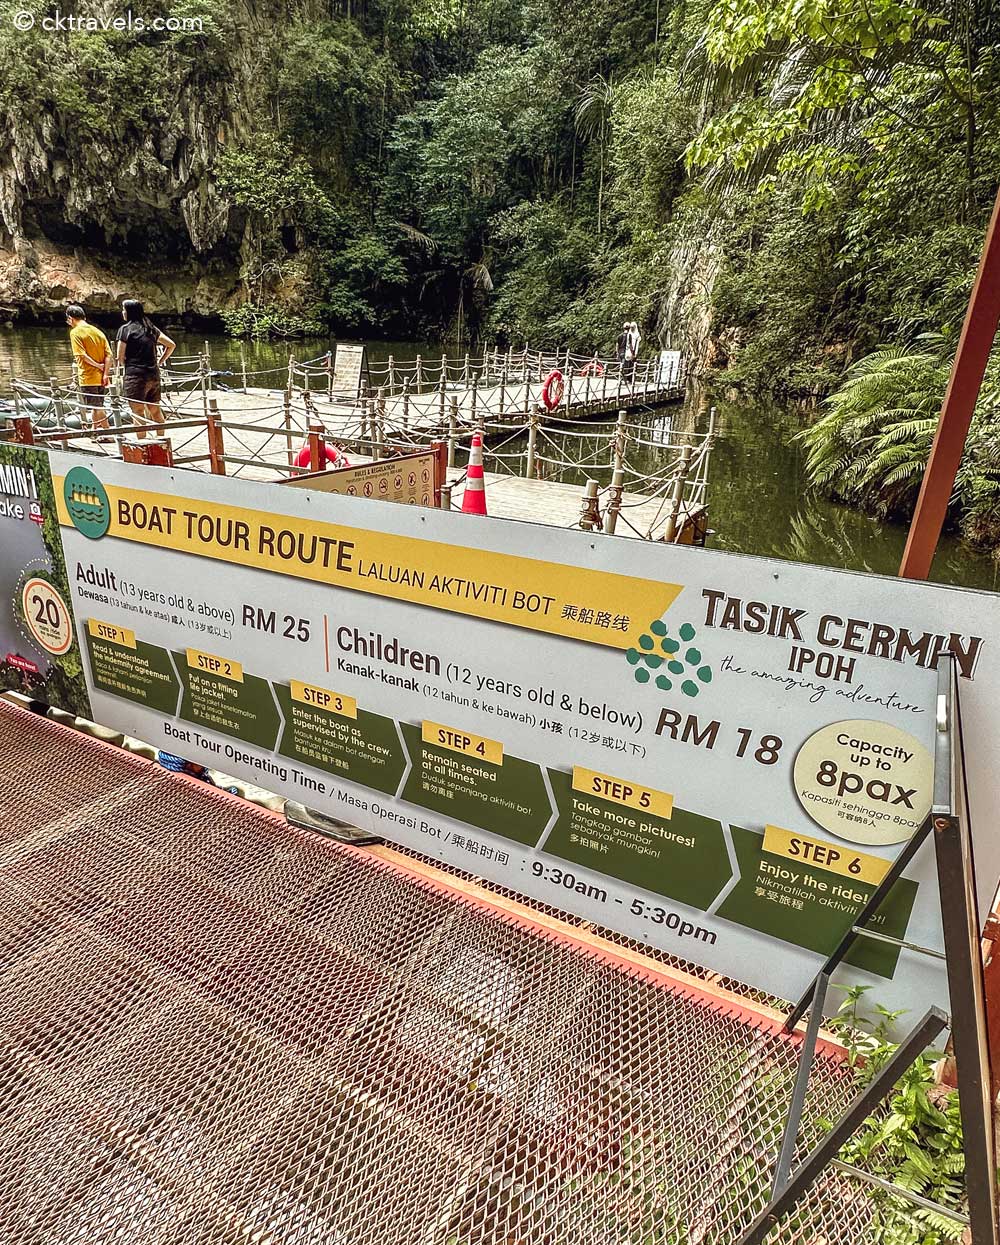 boat ride sign Tasik Cermin (Mirror Lake) in Ipoh